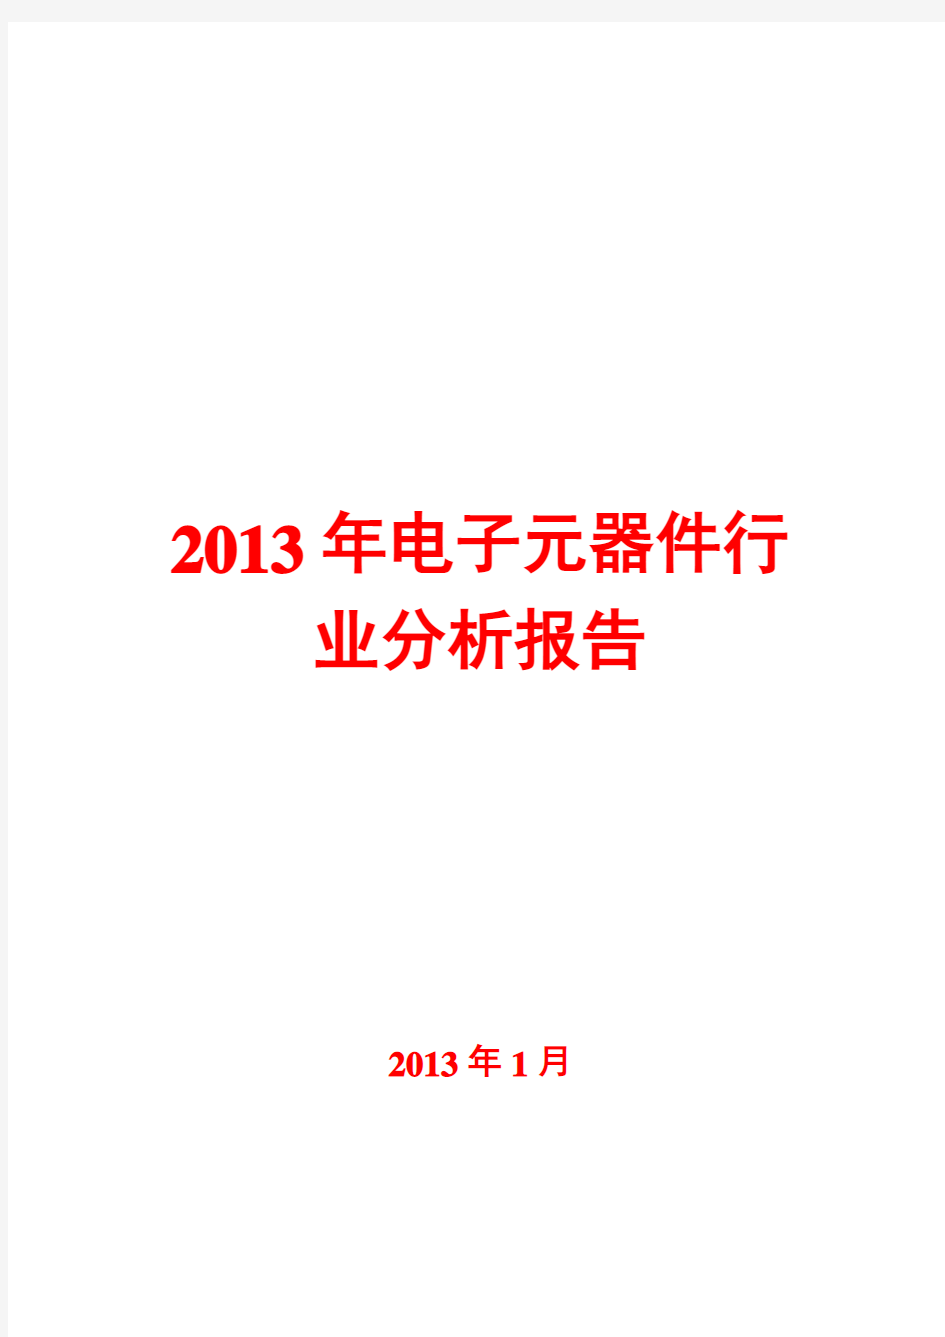 2013年电子元器件行业分析报告